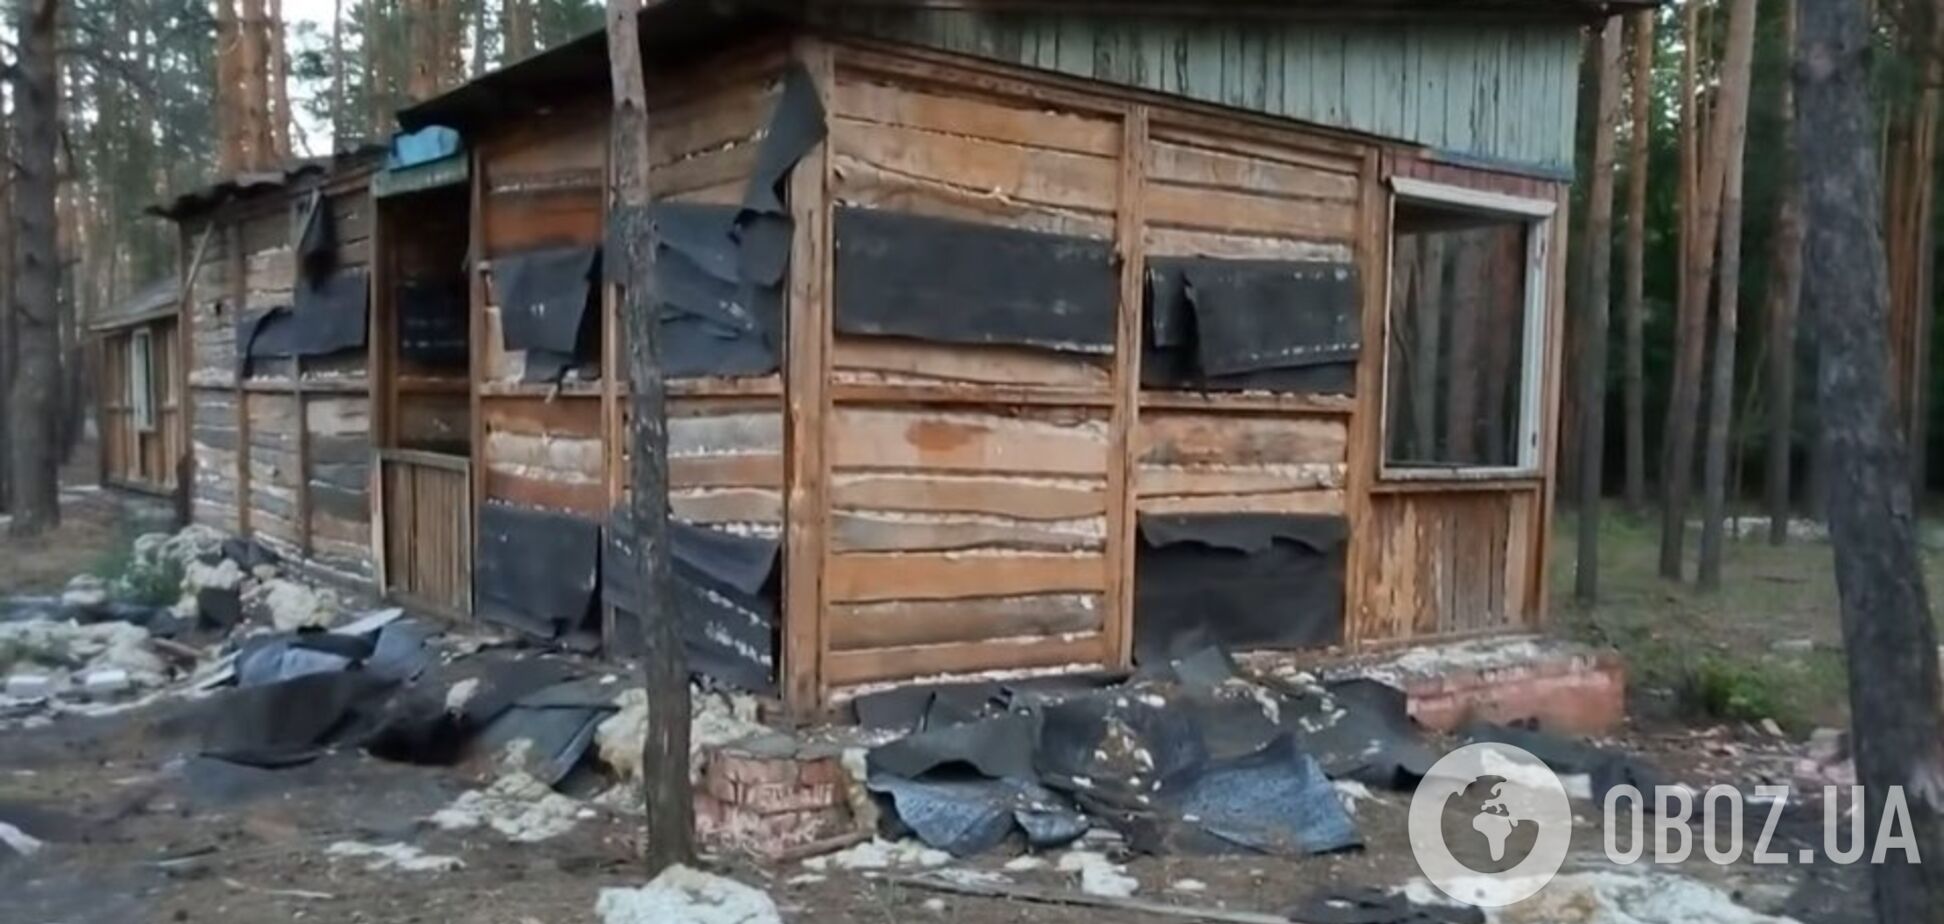 Разрушенные базы Донбасса: скоро не останется даже фундамента